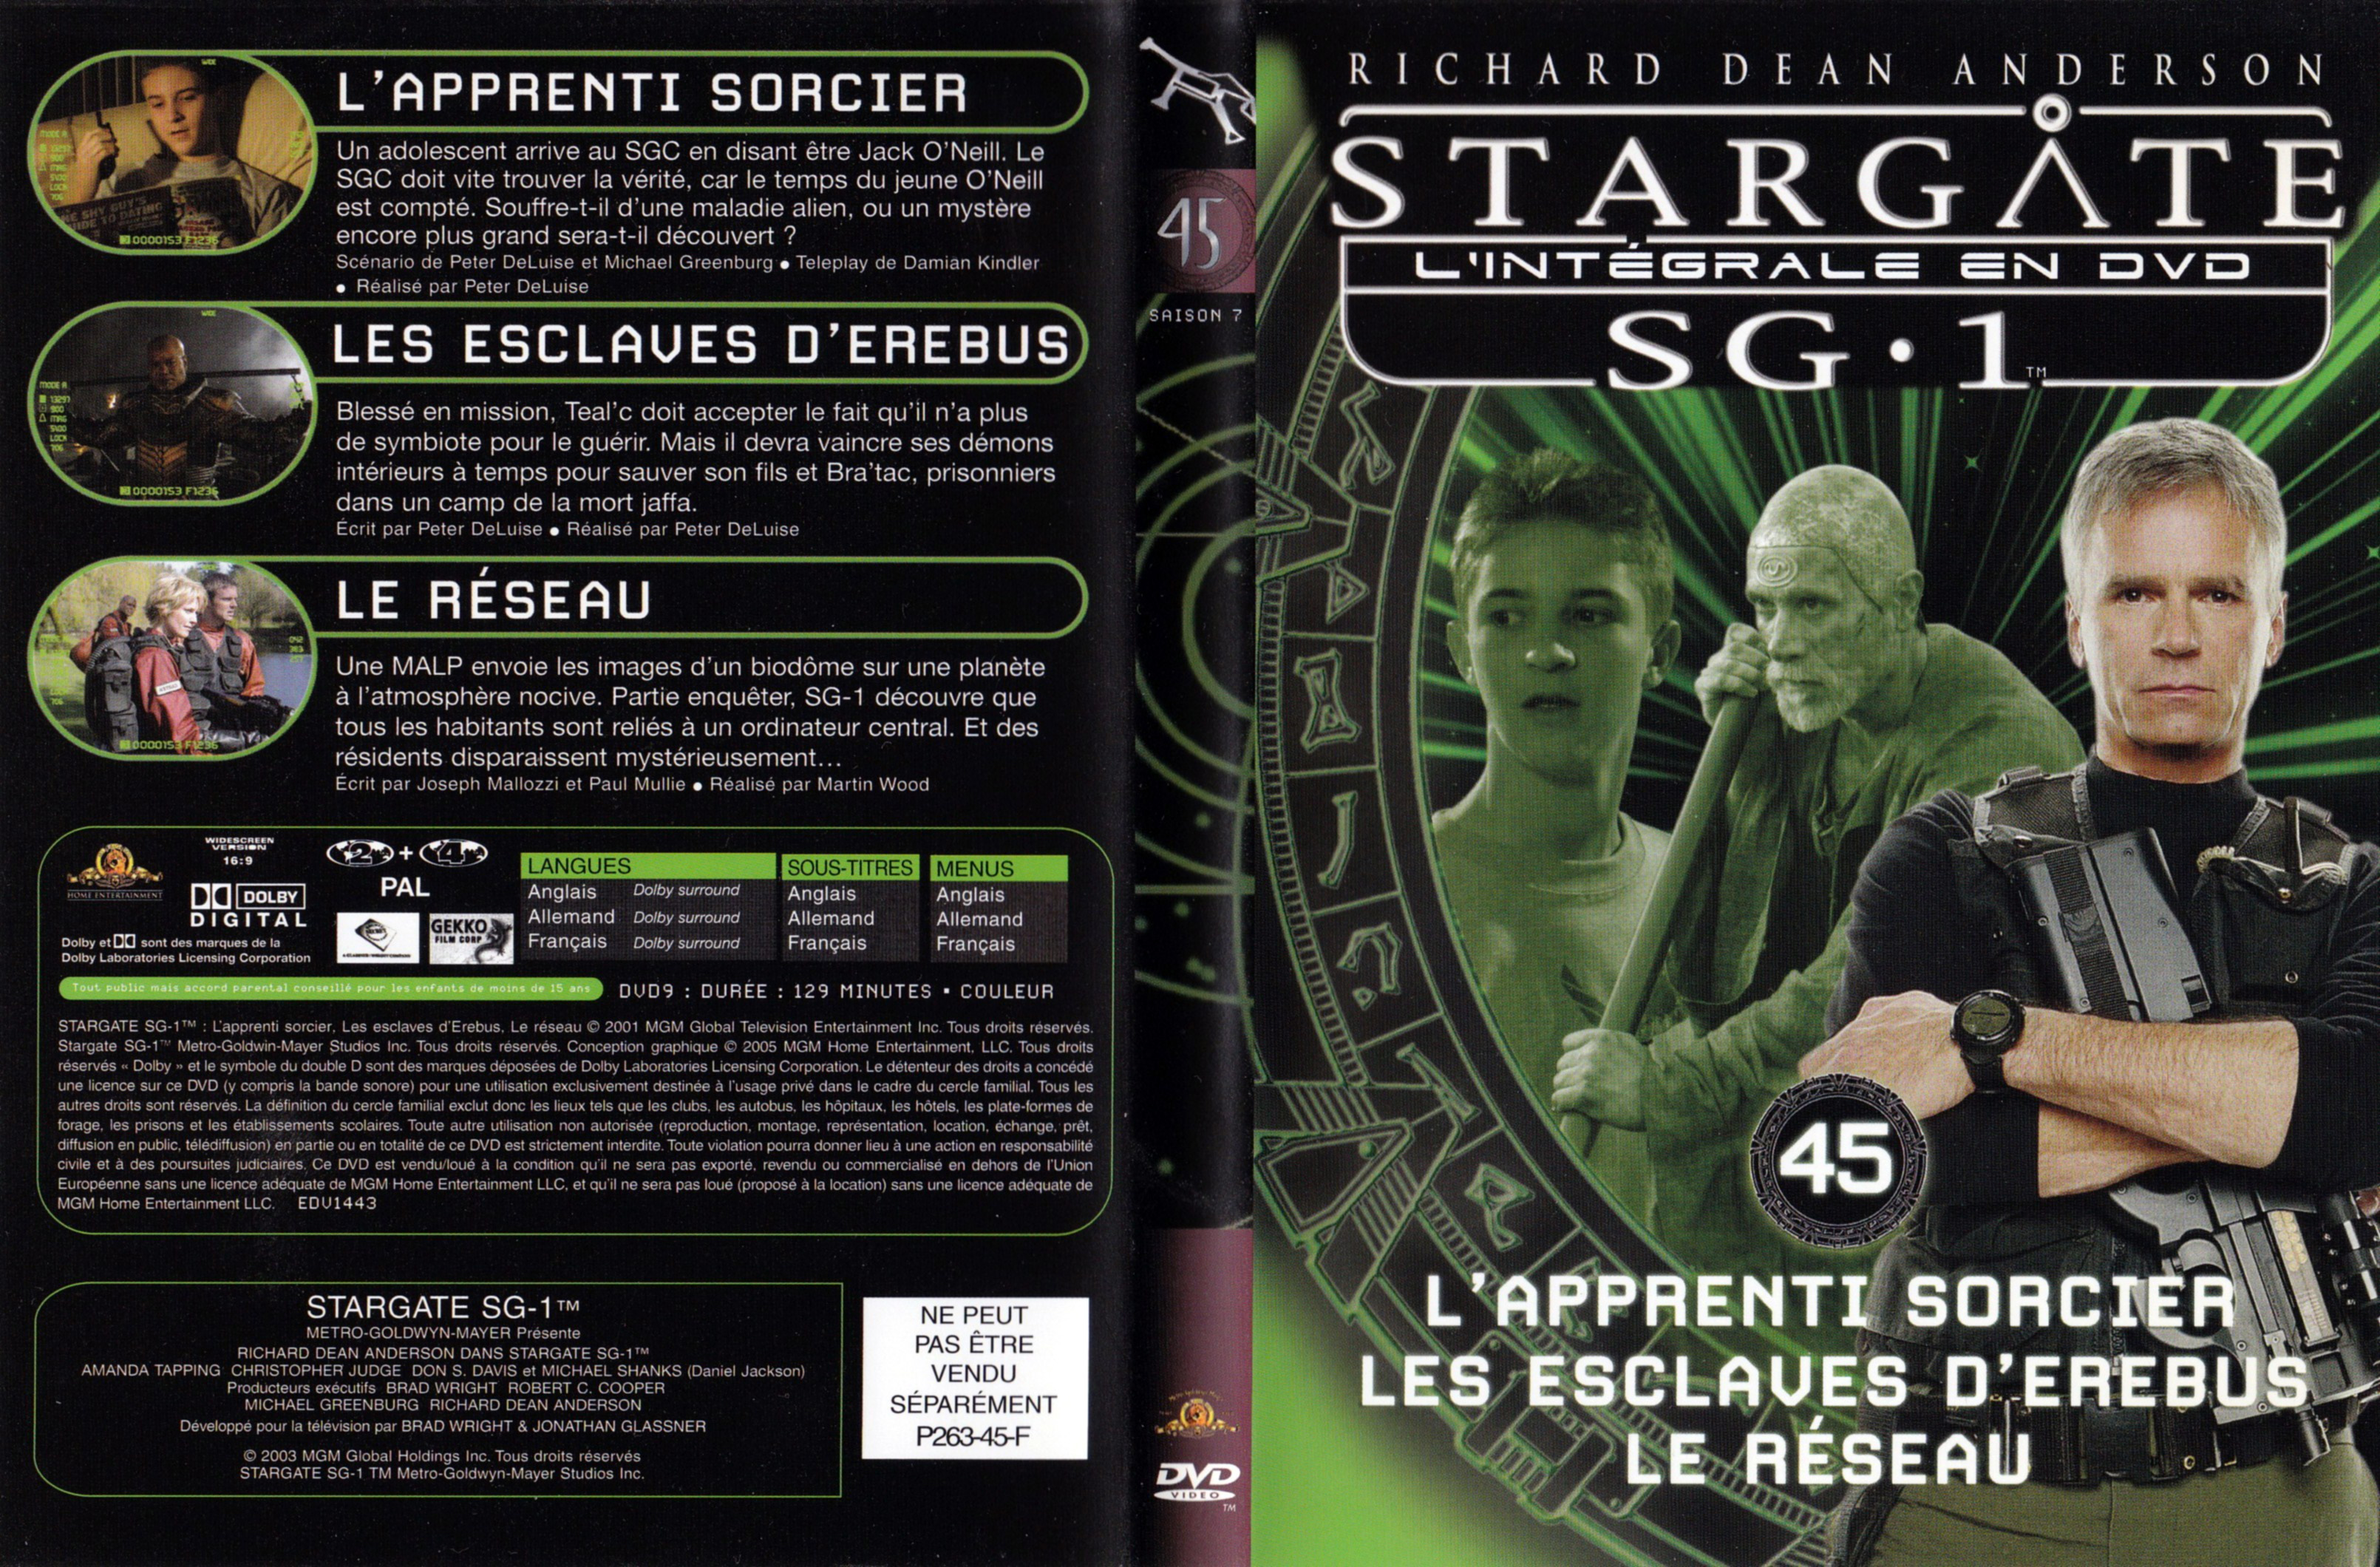 Jaquette DVD Stargate SG1 Intgrale Saison 7 vol 45